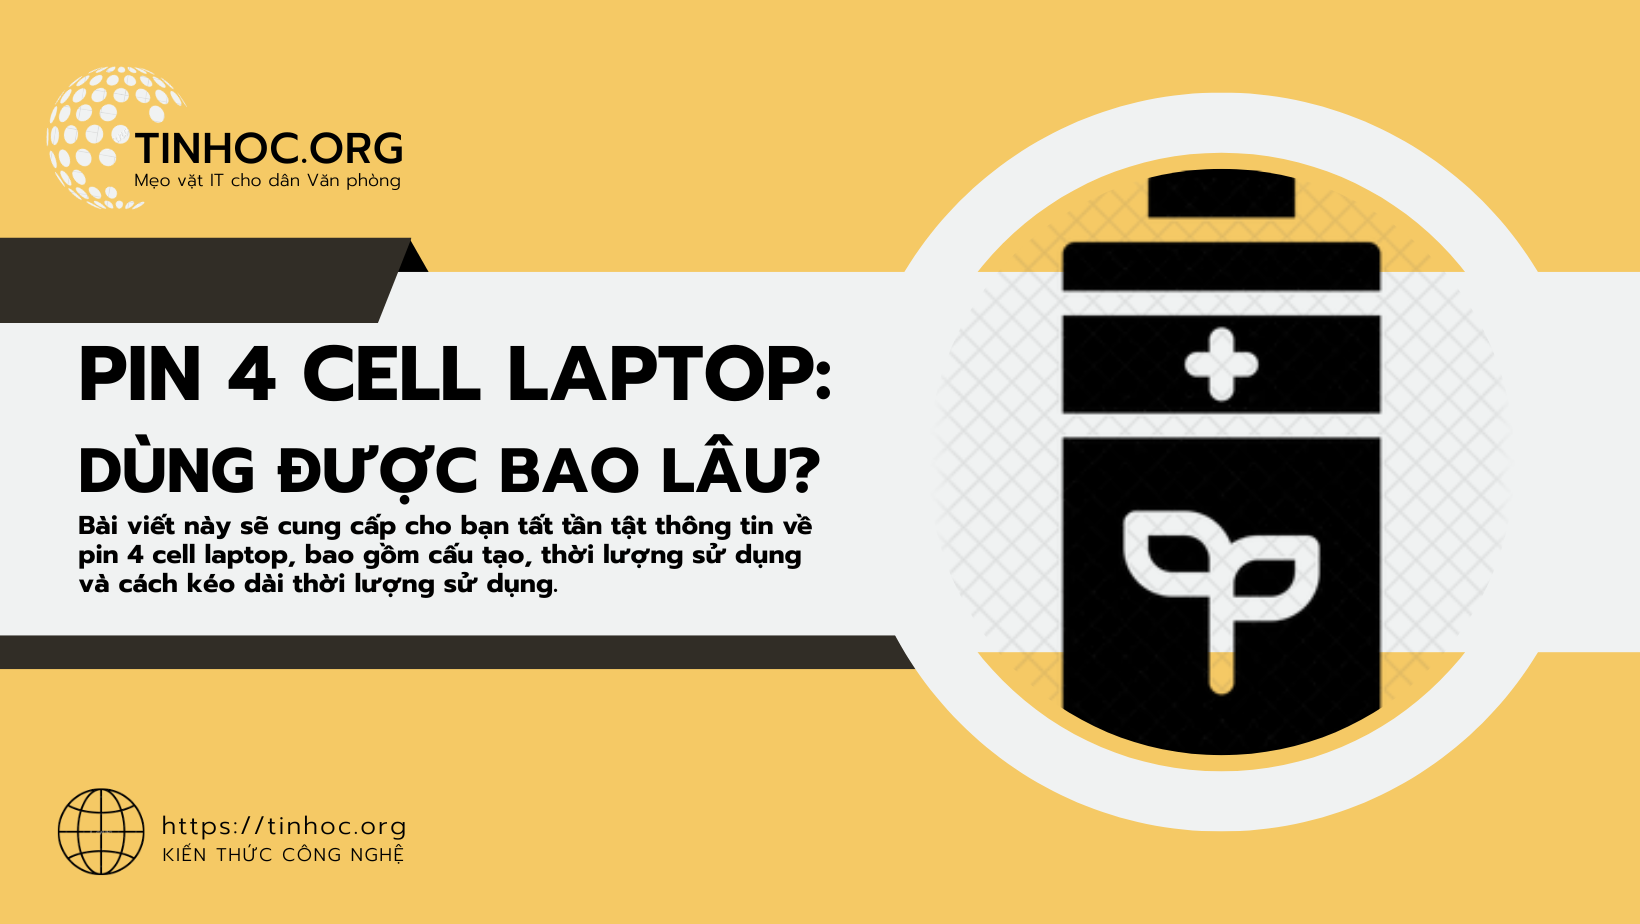 Pin 4 cell laptop: Dùng được bao lâu?